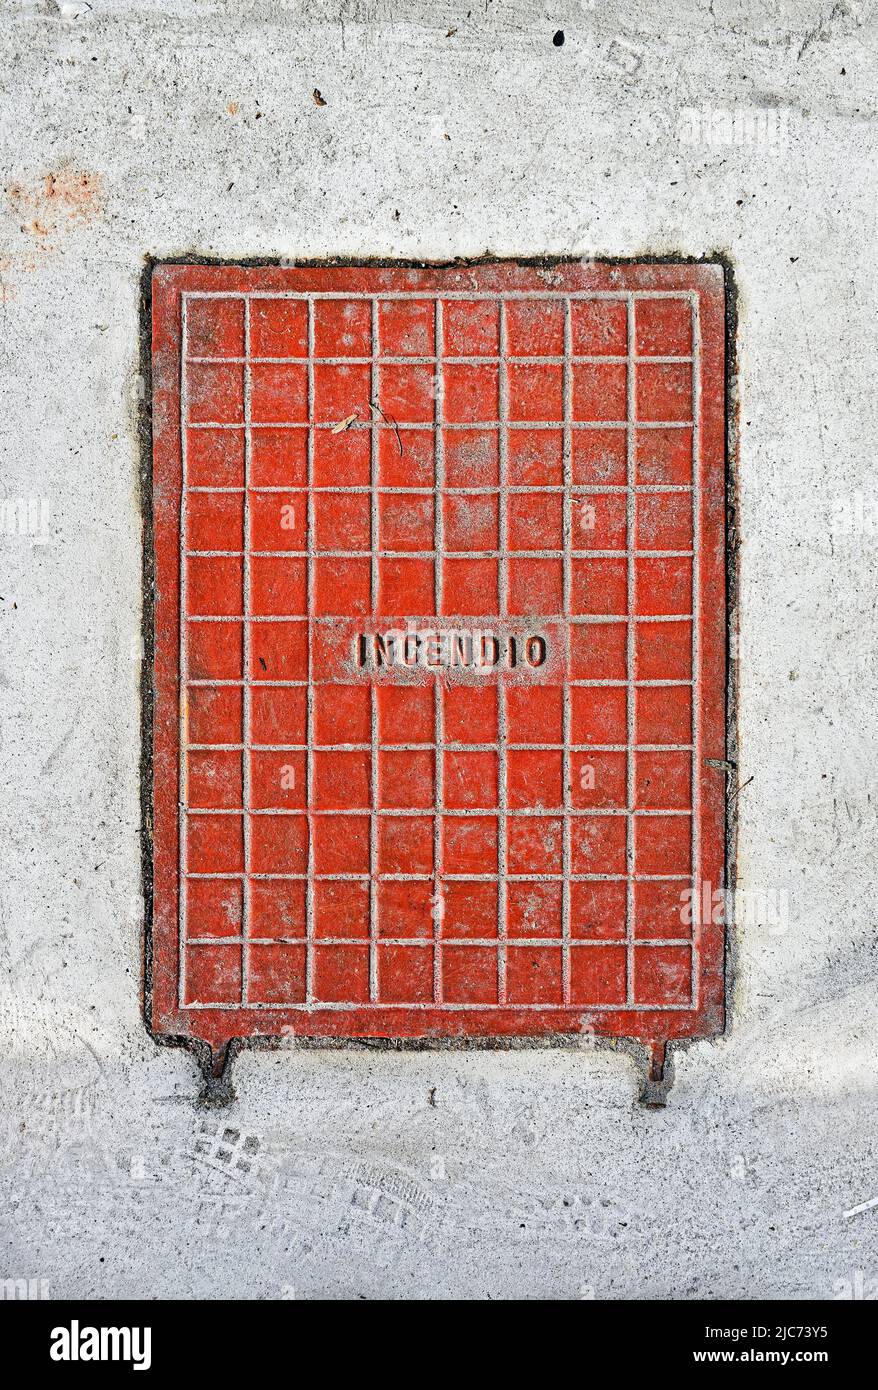 Superficie metálica para acceder al sistema hidráulico contra incendios con palabra portuguesa que significa FUEGO (Incendio) Foto de stock